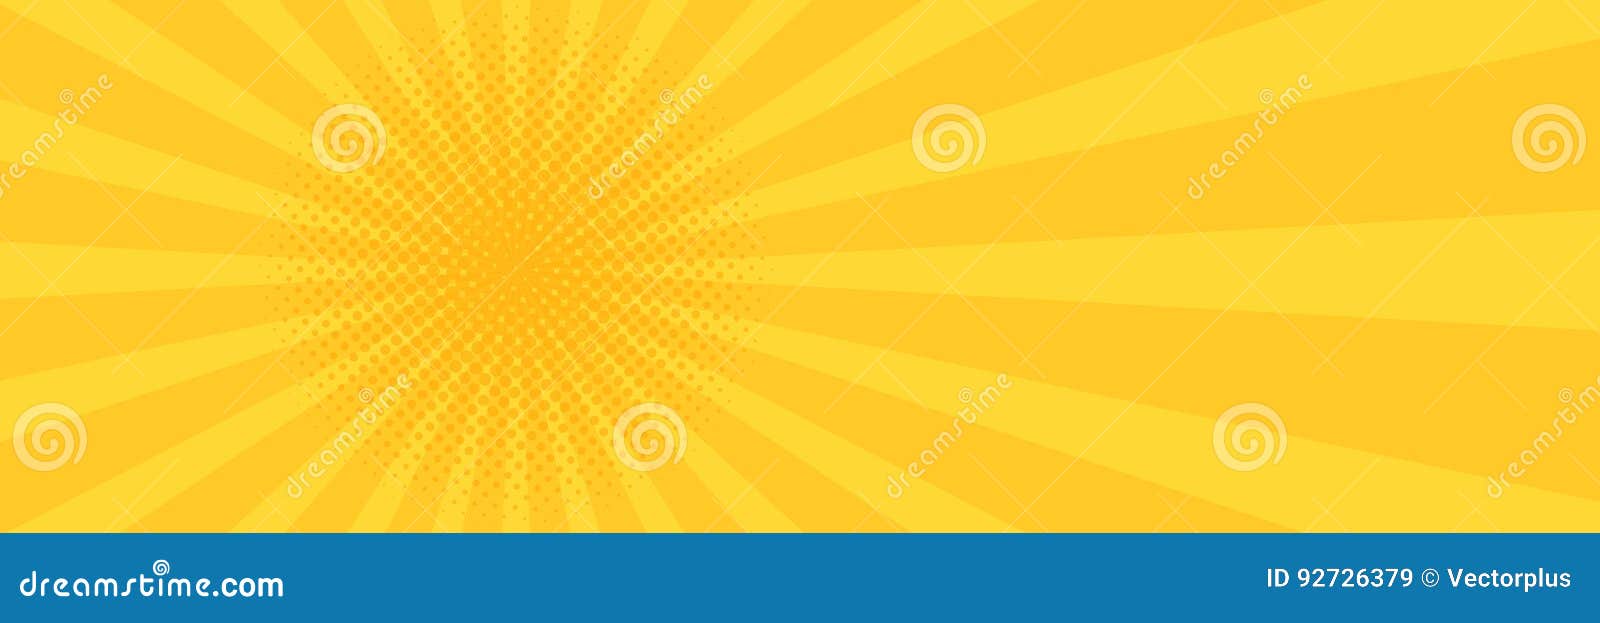 Vintage Pop Art Yellow Background. Banner Illustration Stock Illustration -  Illustration of rays, decoration: 92726379